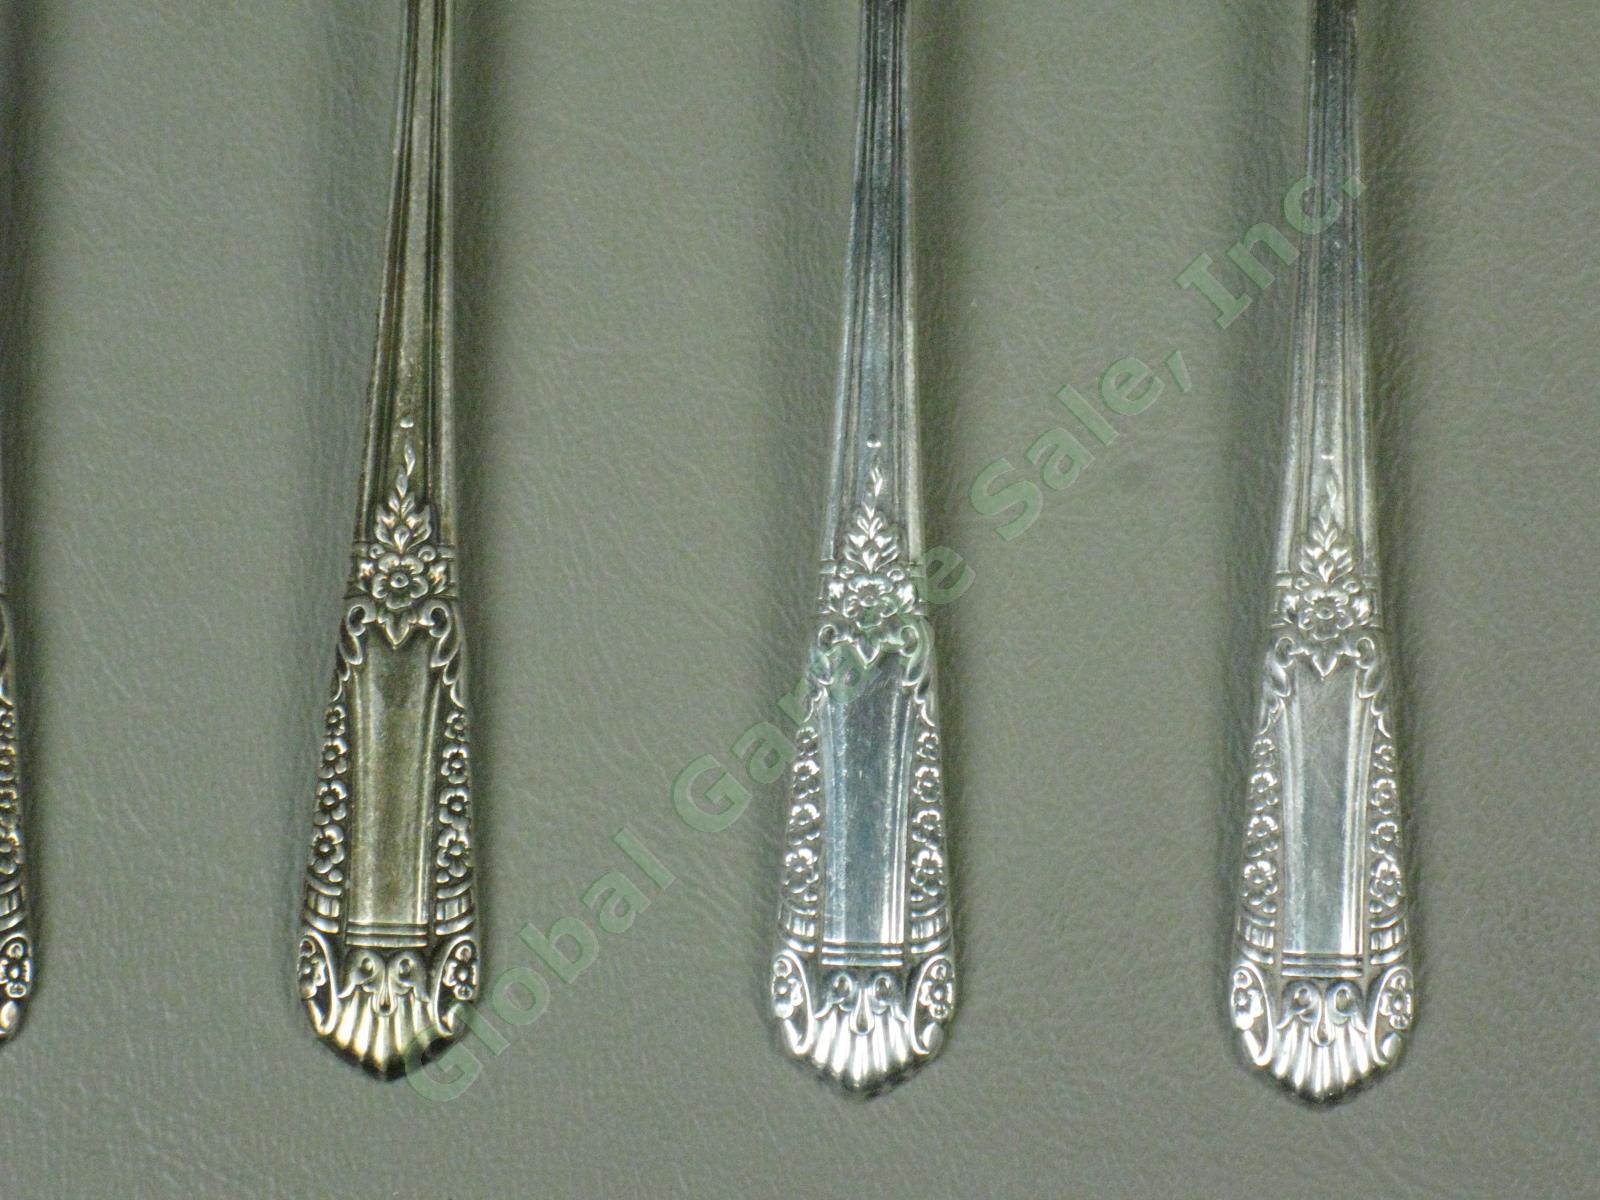 7 State House Inaugural Sterling Silver Teaspoons Spoons Silverware Flatware Set 2